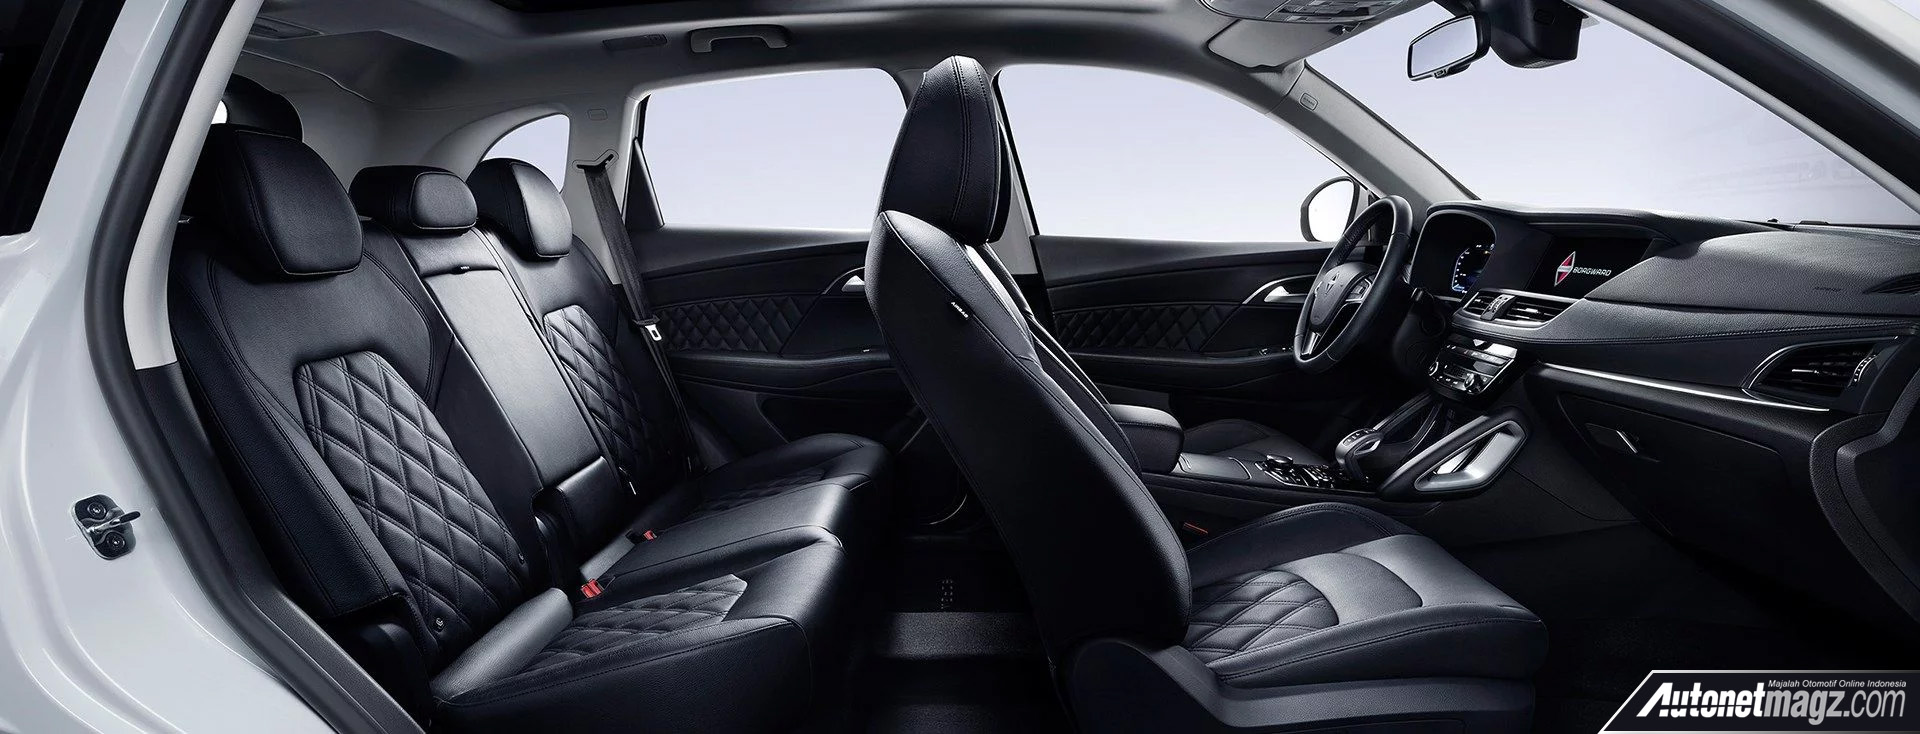 Berita, interior Borgward BXi7: Borgward Perkenalkan SUV Electric BXi7, Mampu Tempuh 375 km